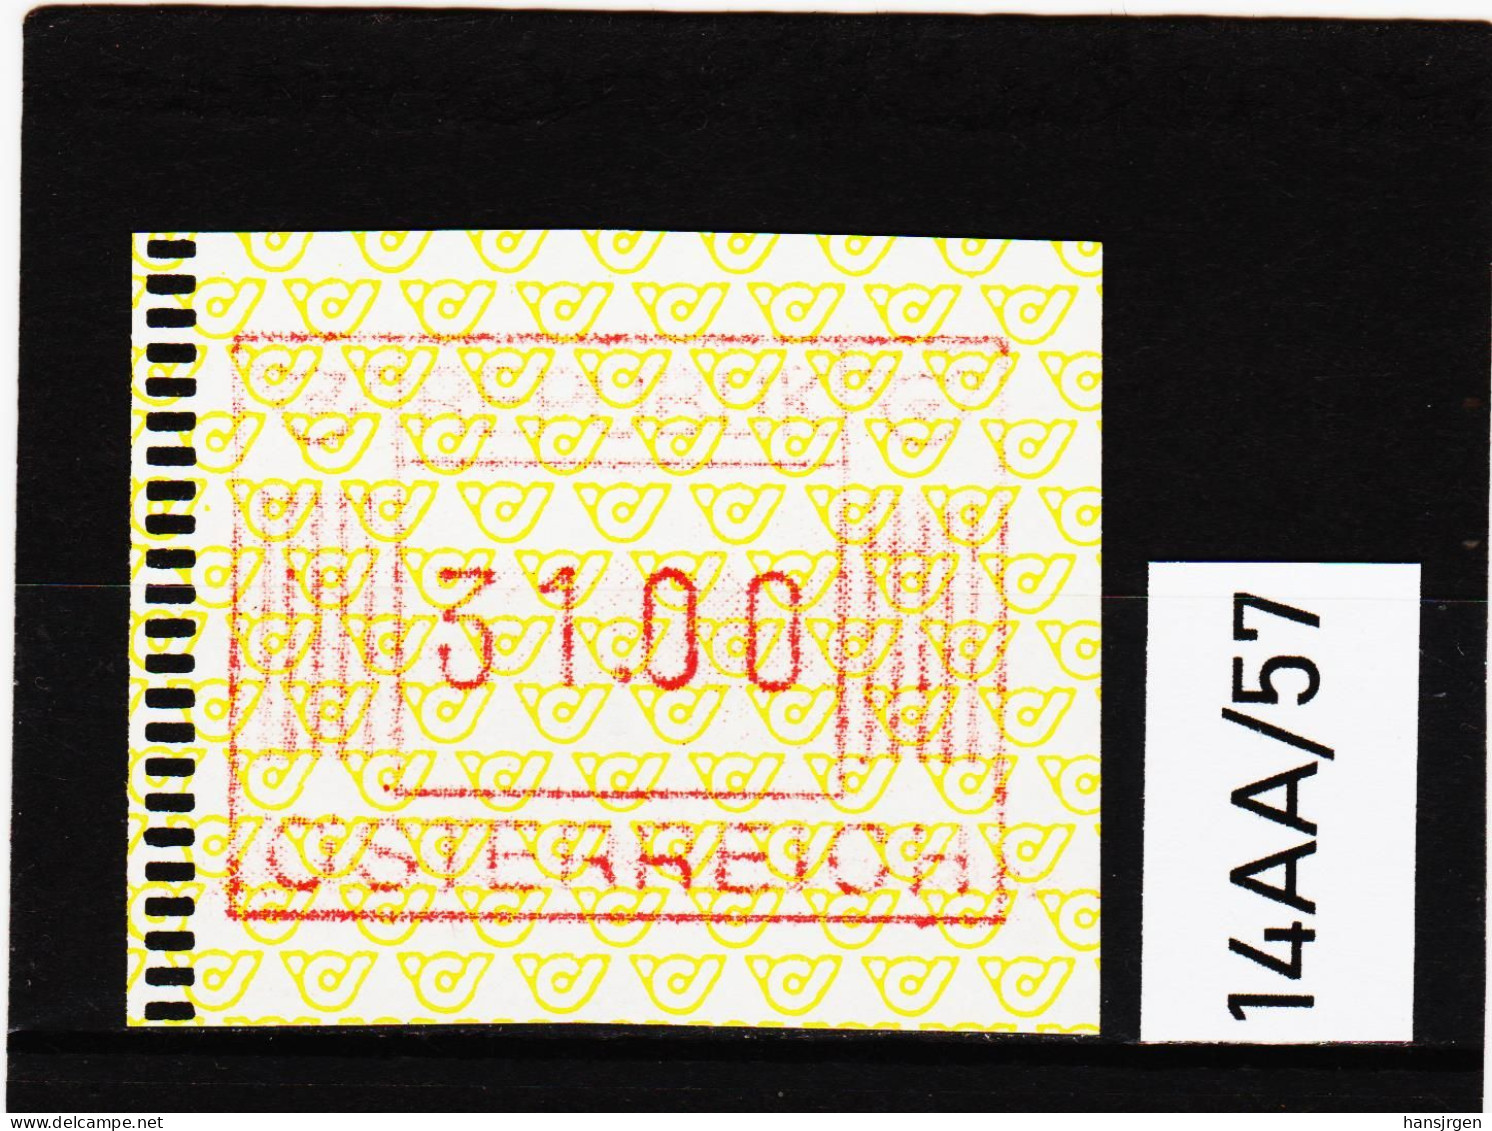 14AA/57  ÖSTERREICH 1983 AUTOMATENMARKEN 1. AUSGABE  31,00 SCHILLING   ** Postfrisch - Vignette [ATM]